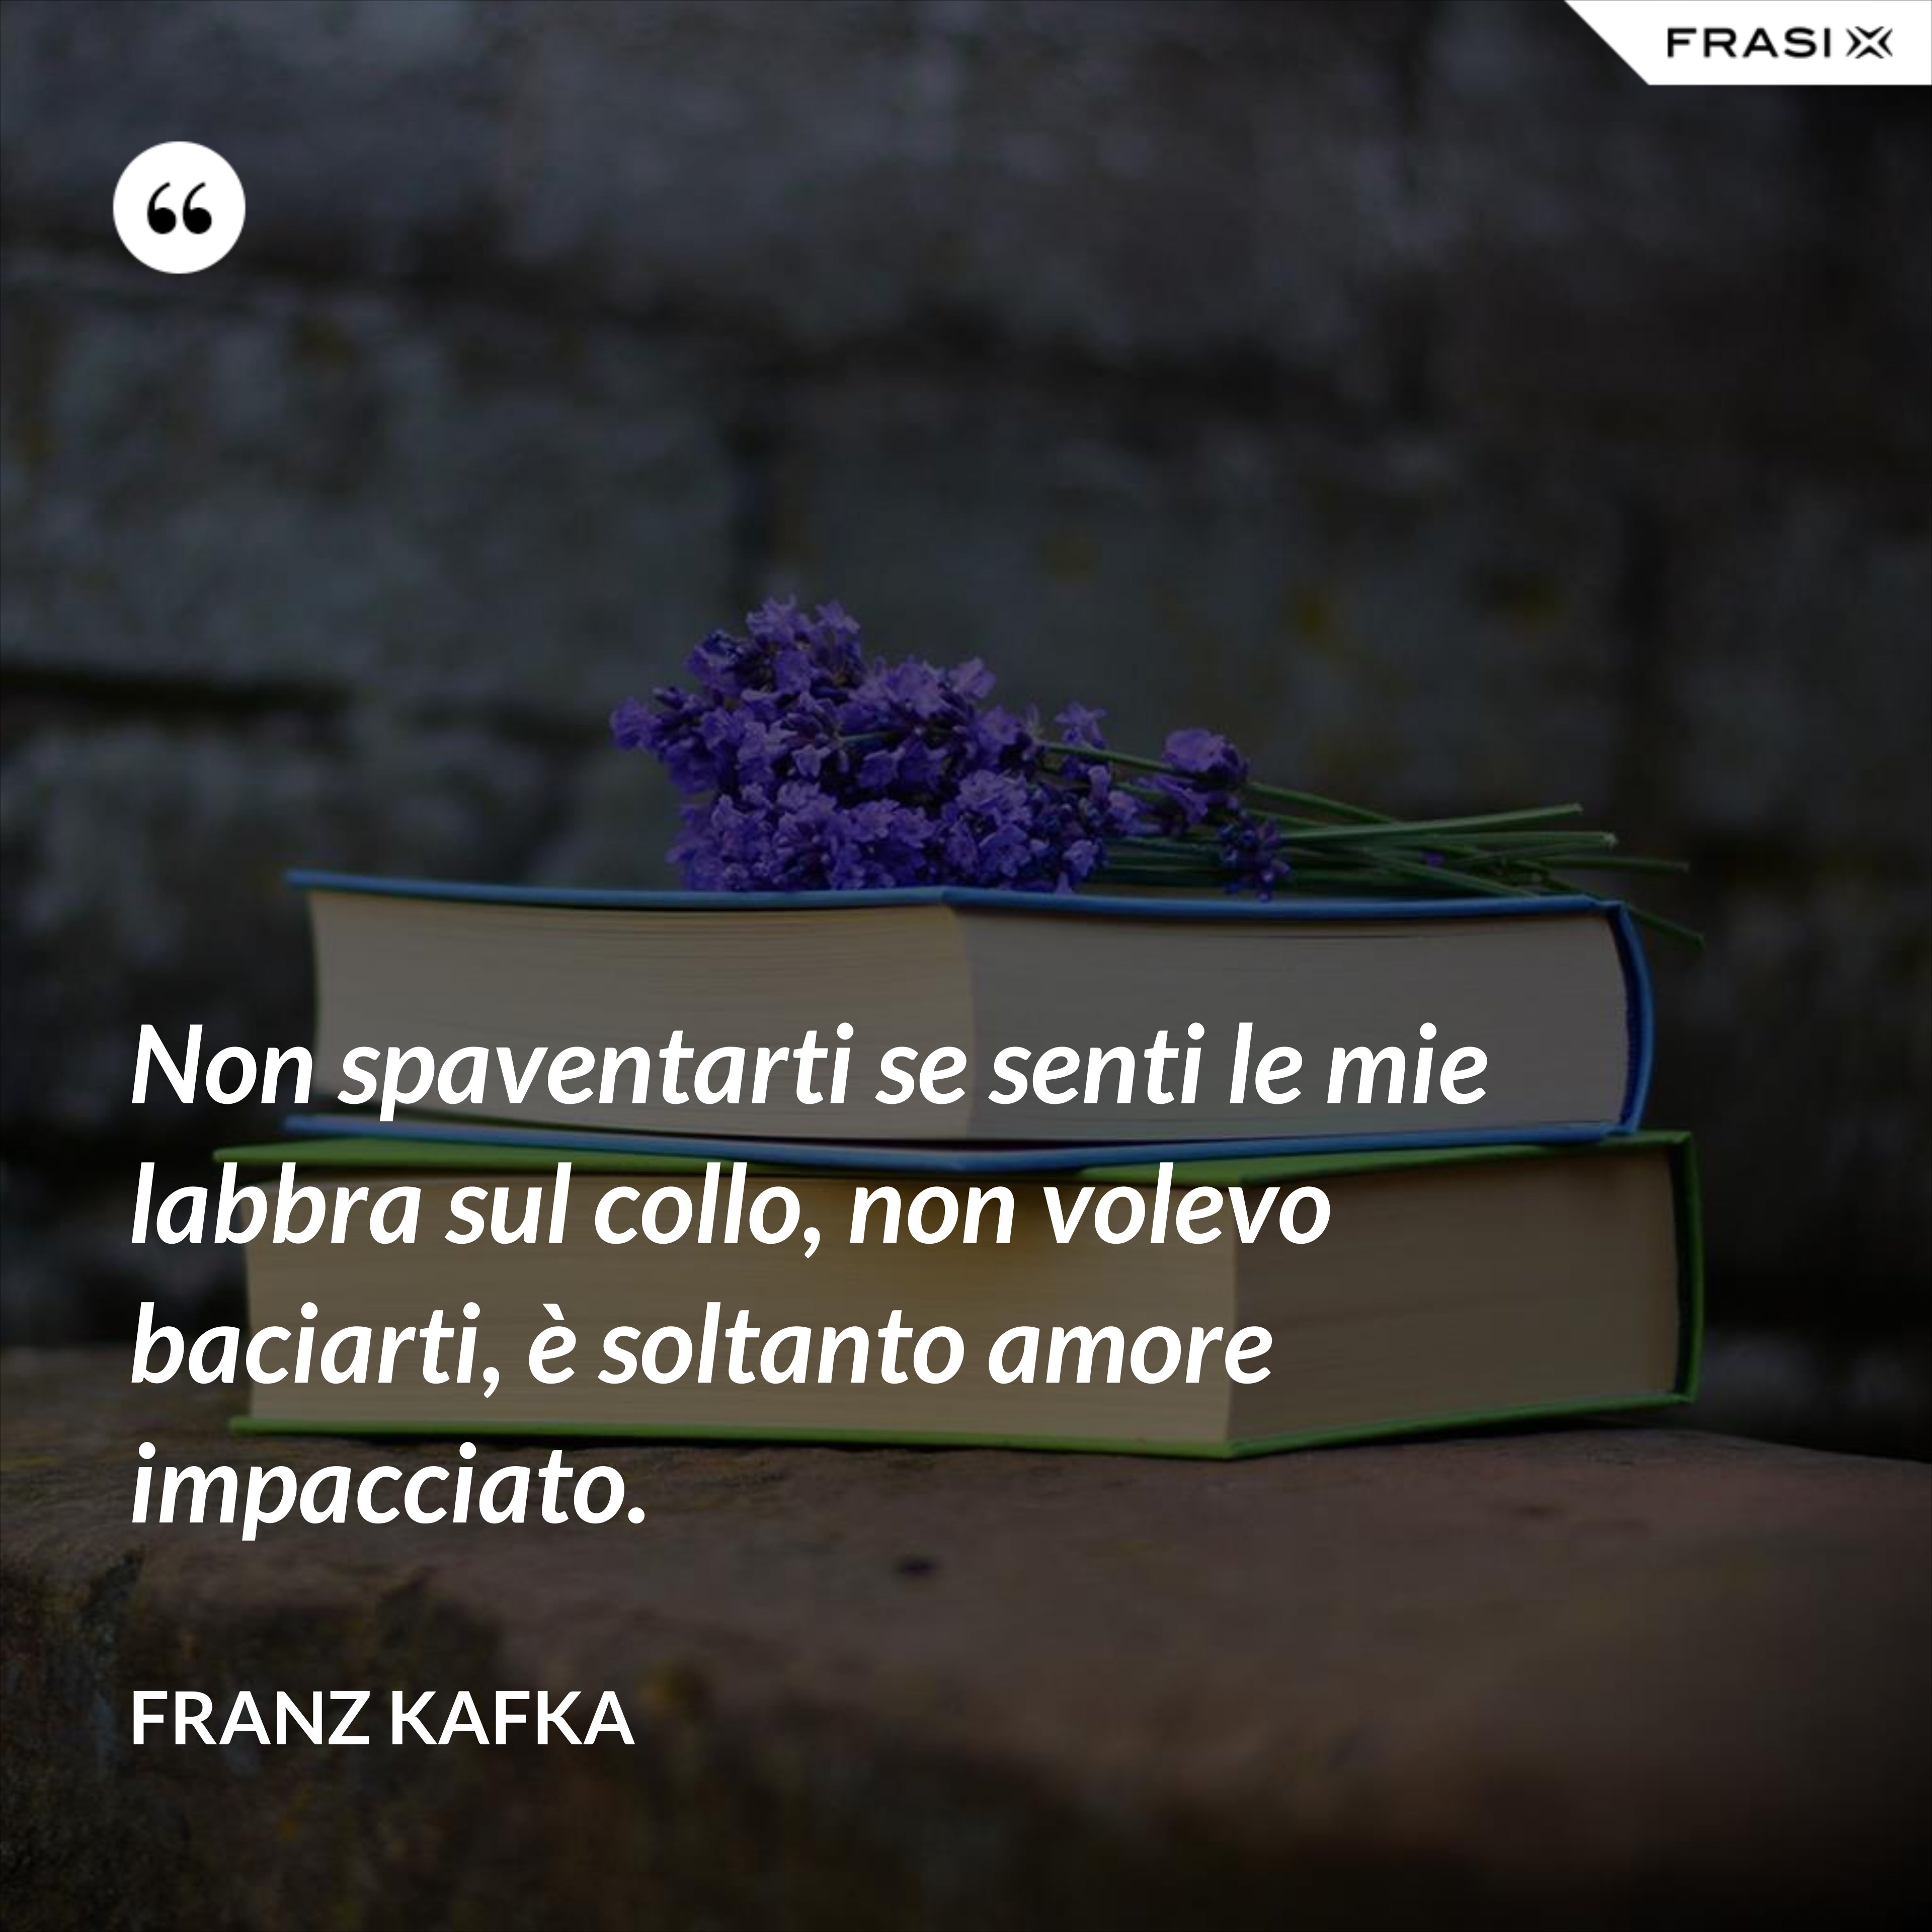 Non spaventarti se senti le mie labbra sul collo, non volevo baciarti, è soltanto amore impacciato. - Franz Kafka